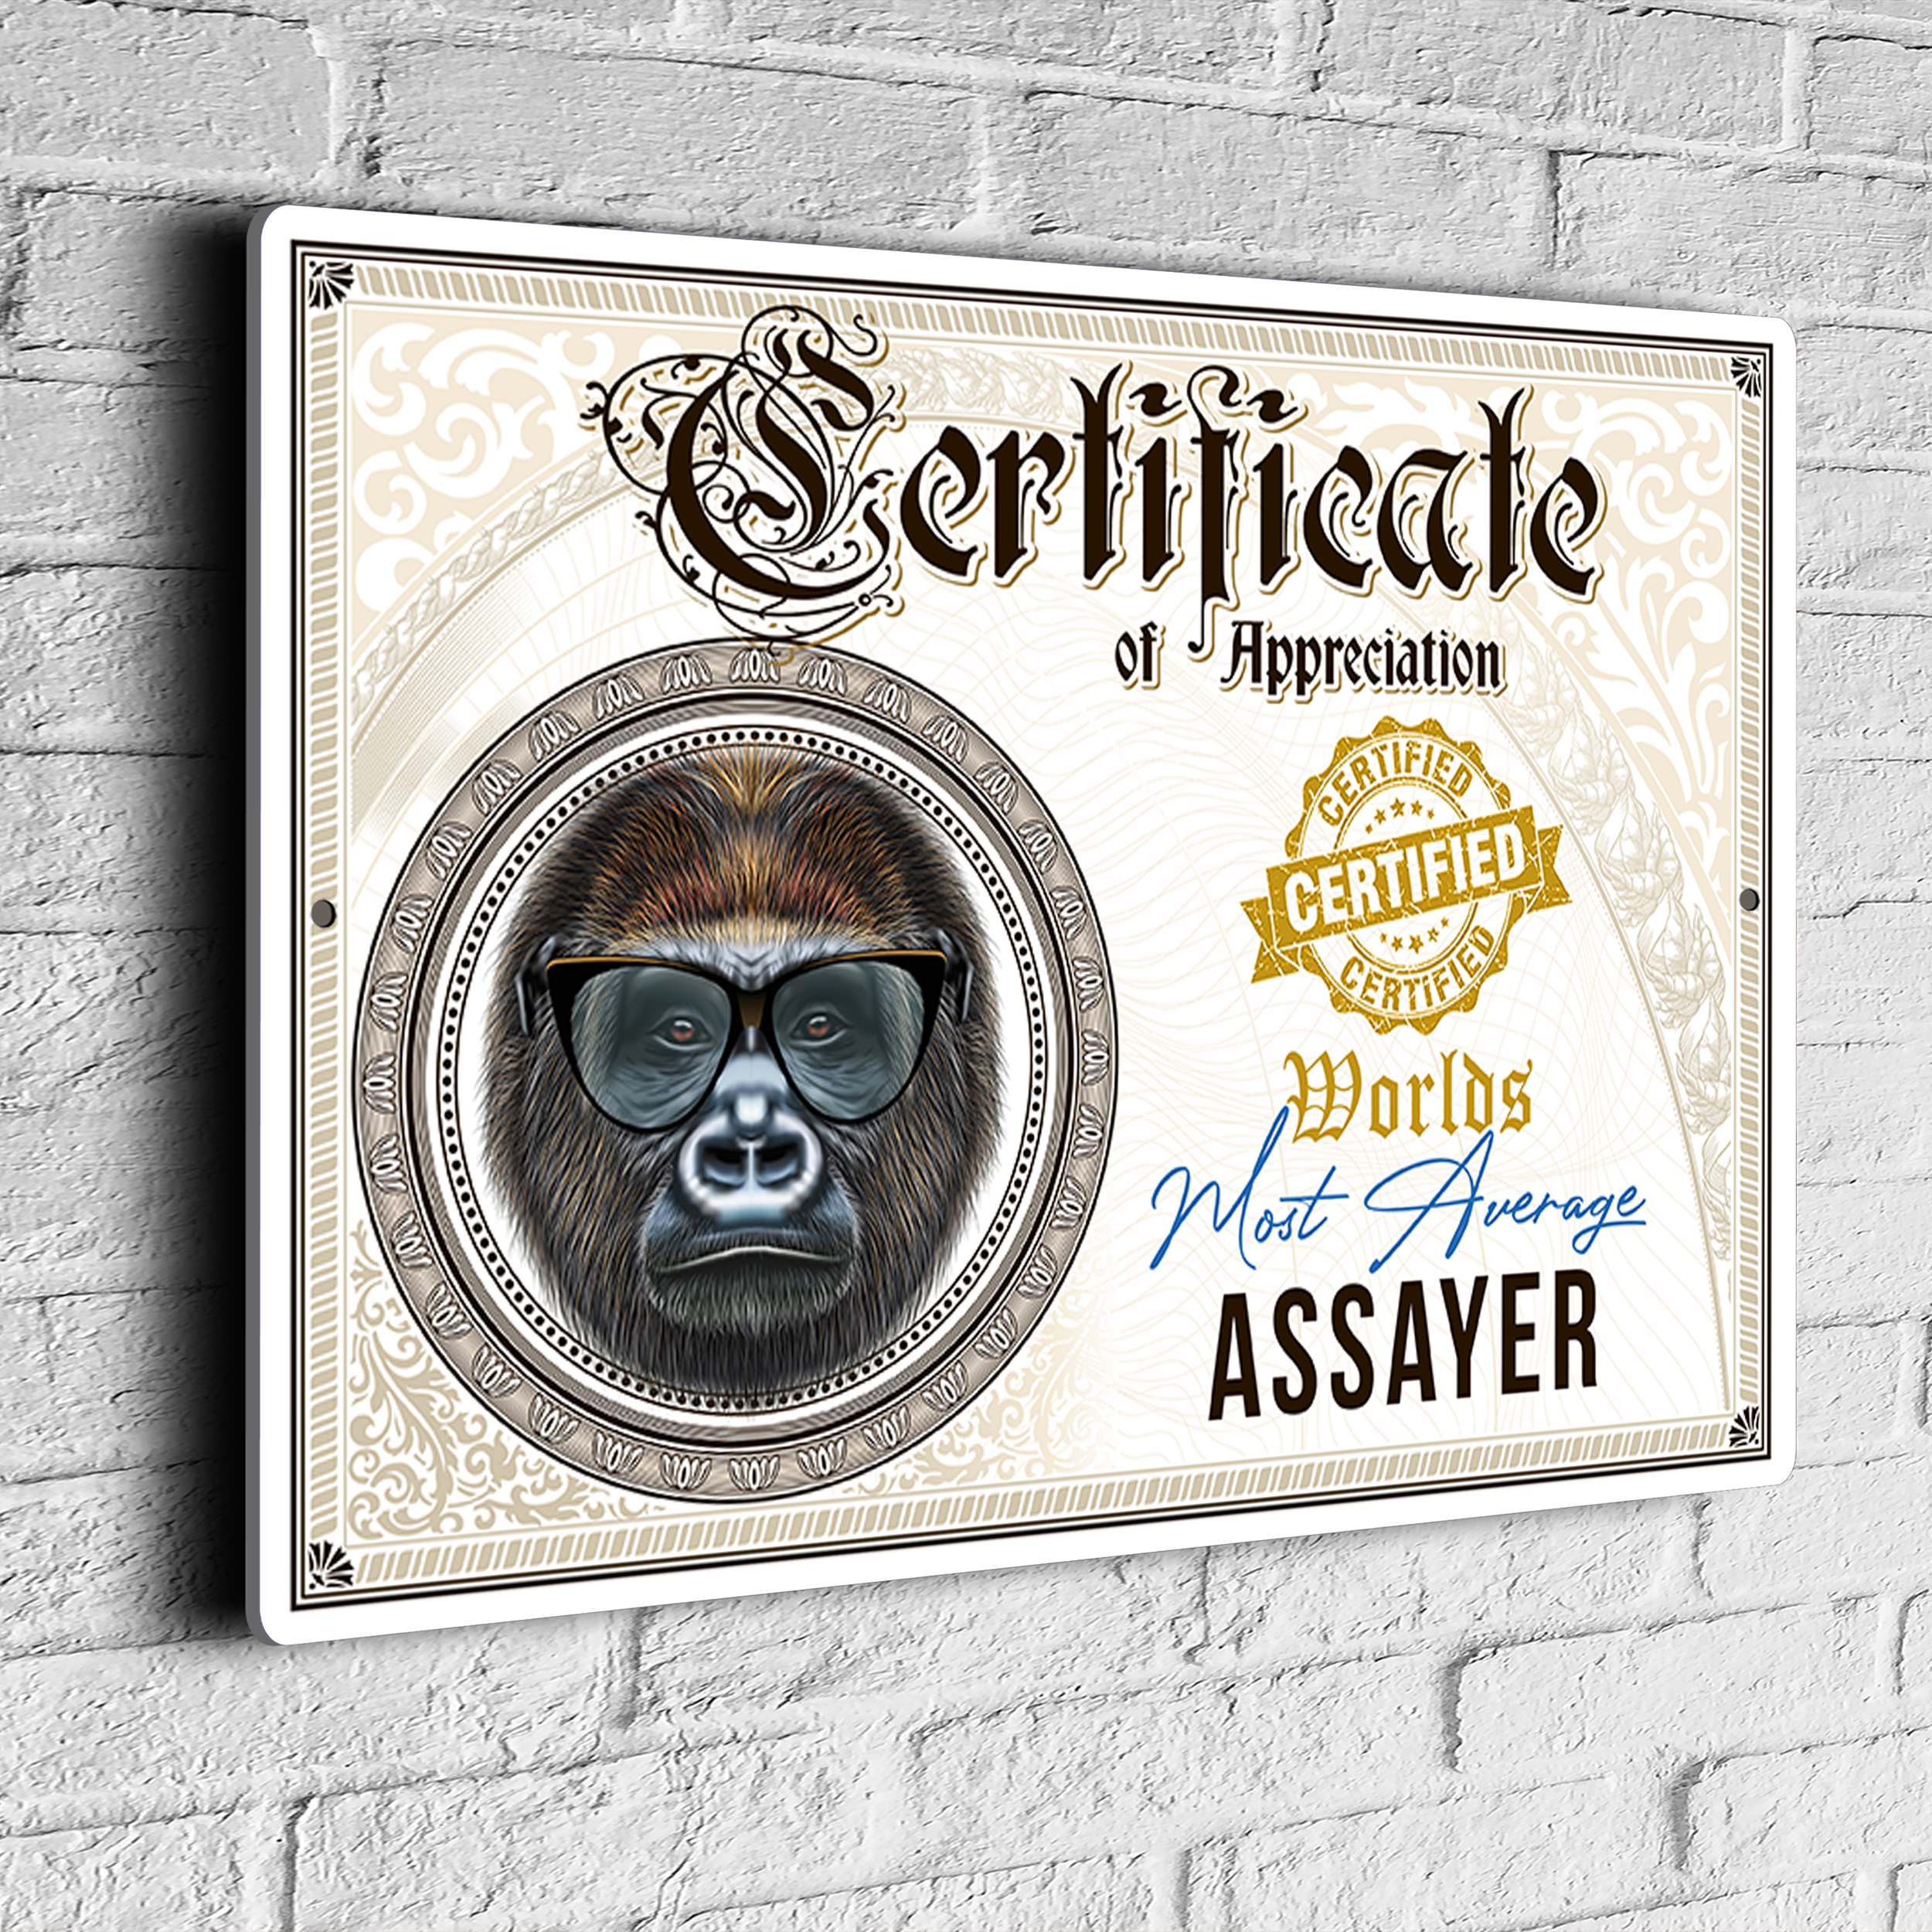 Fun Assayer Certificate